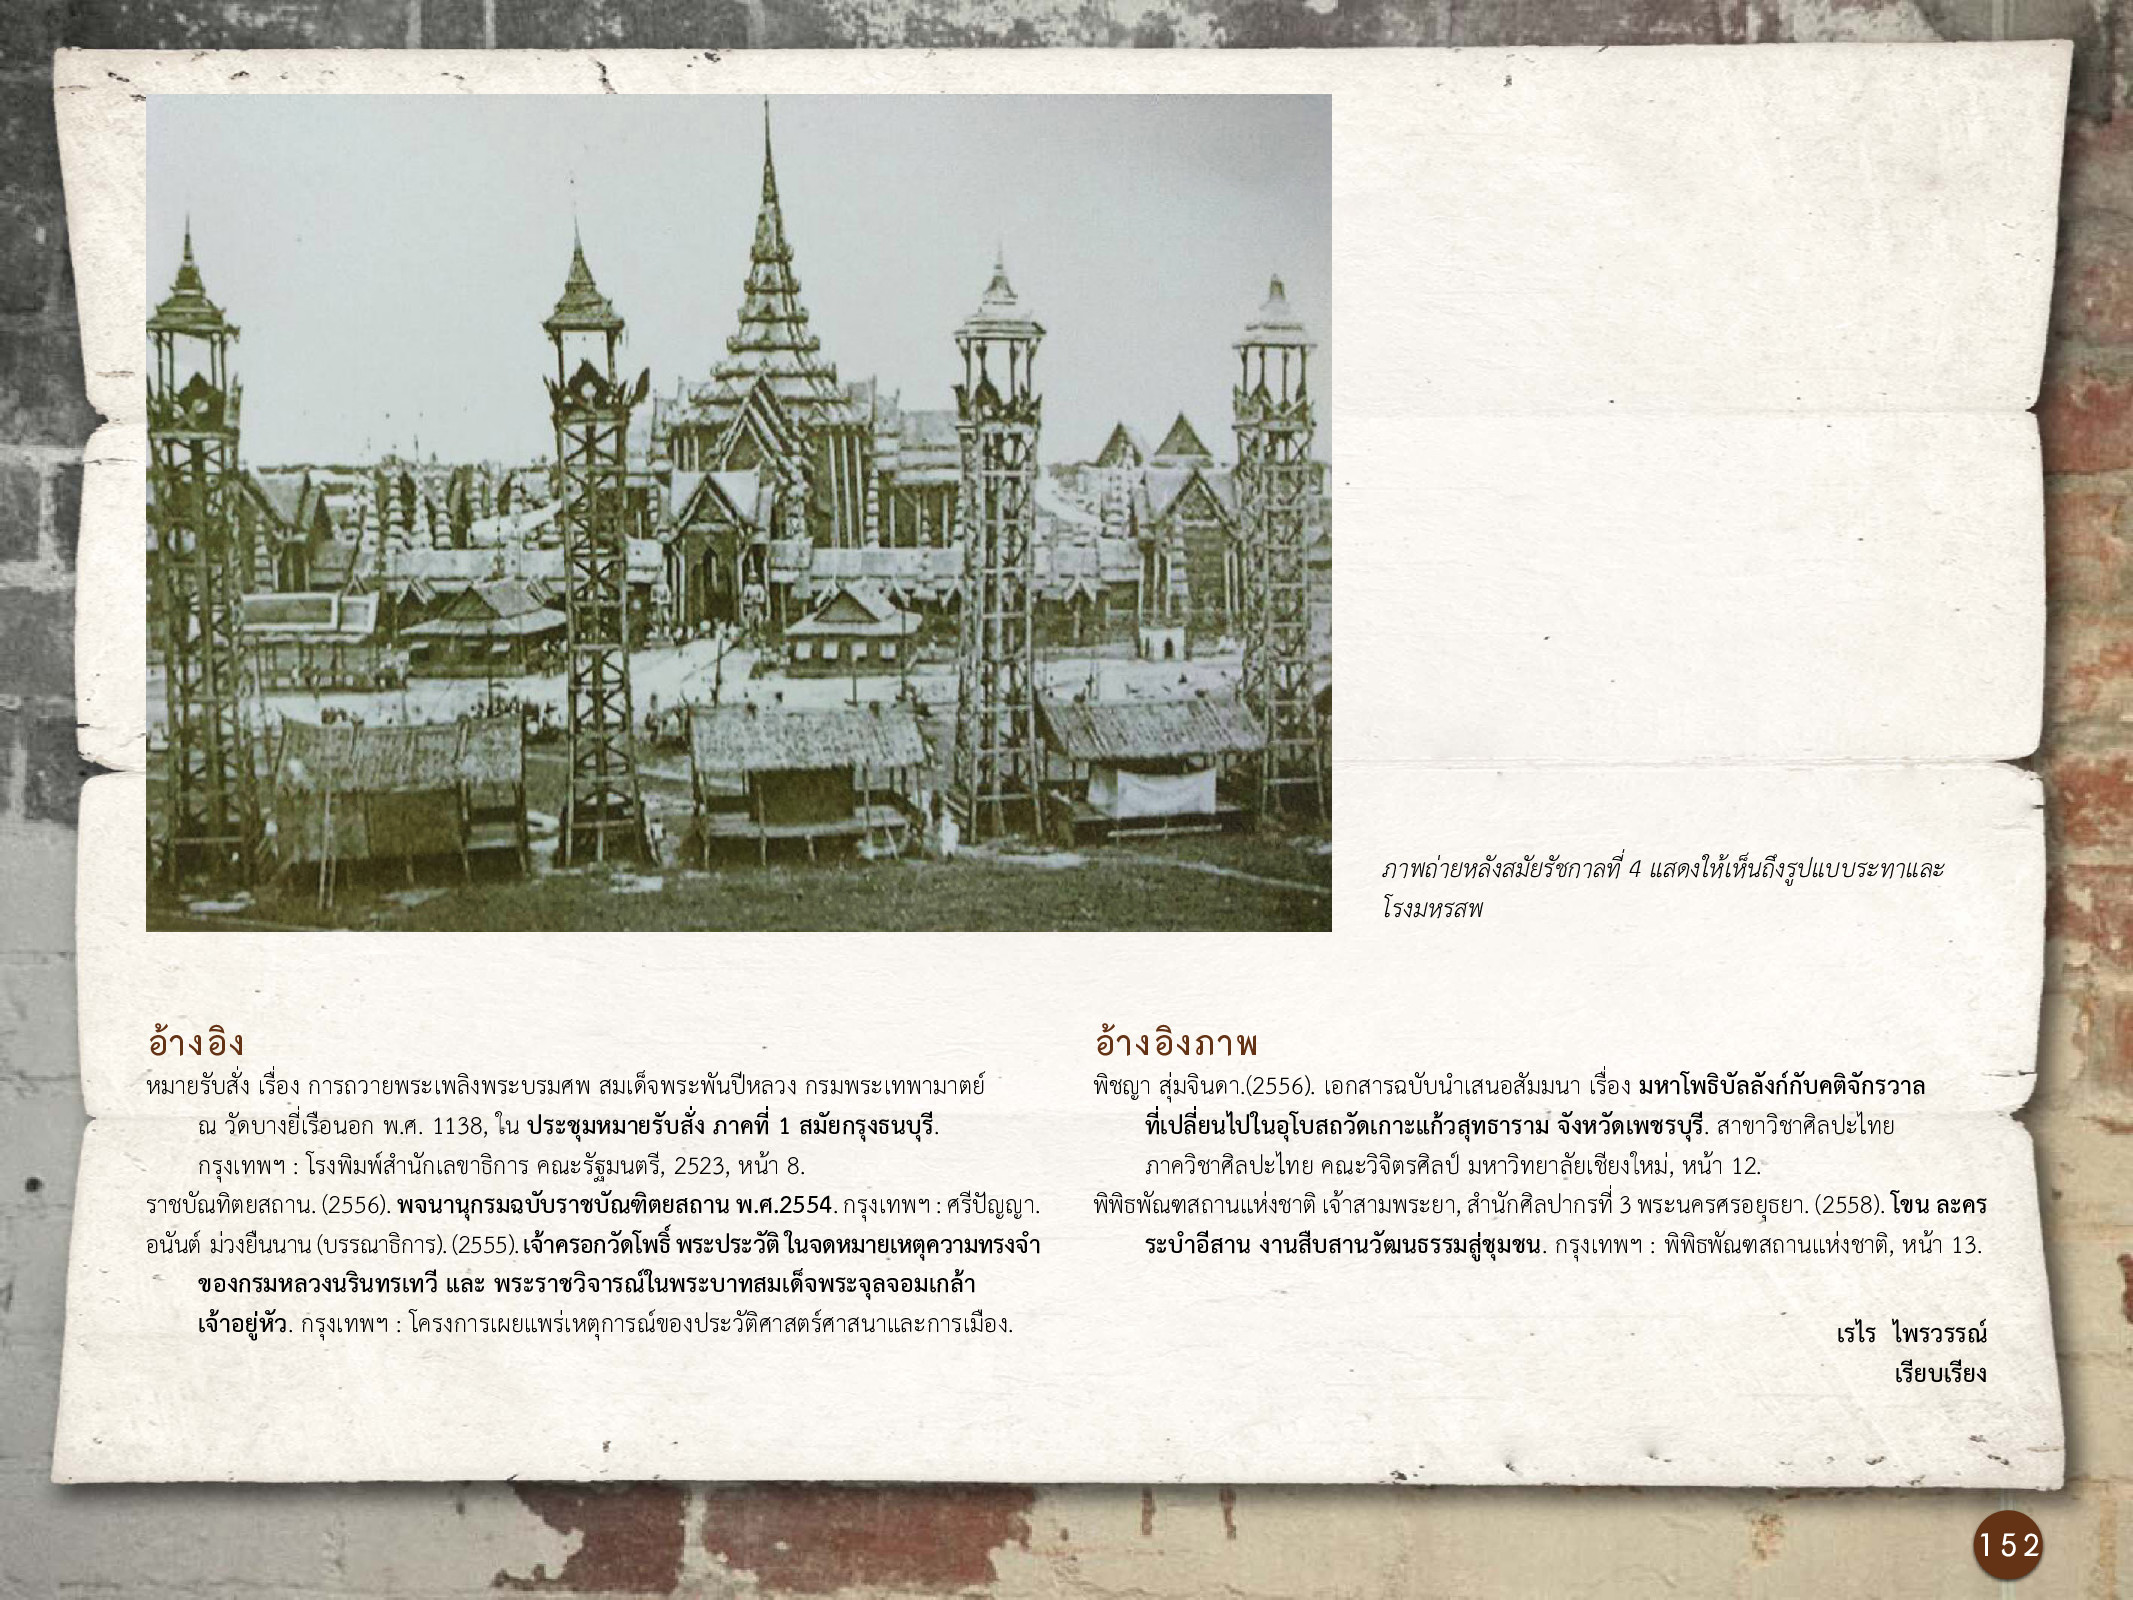 ศิลปกรรมกรุงธนบุรี ./images/encyclopedia/152.jpg